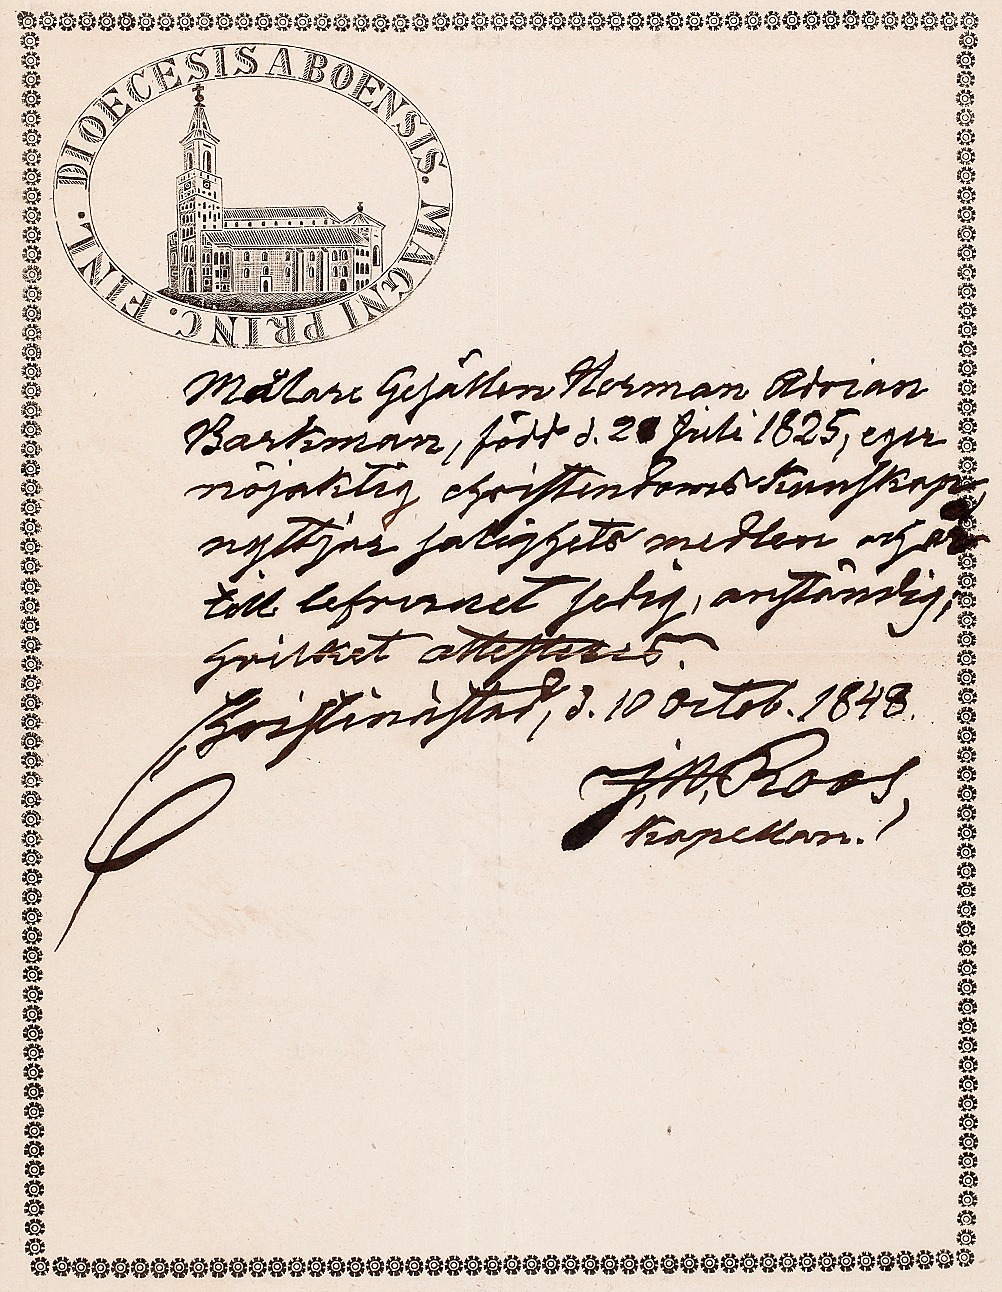 Kaplanen Roos rekommenderar målargesällen Herman Adrian Barkman, i Christinestad 1848. Brevet finns i Finska konstföreningens arkiv. 